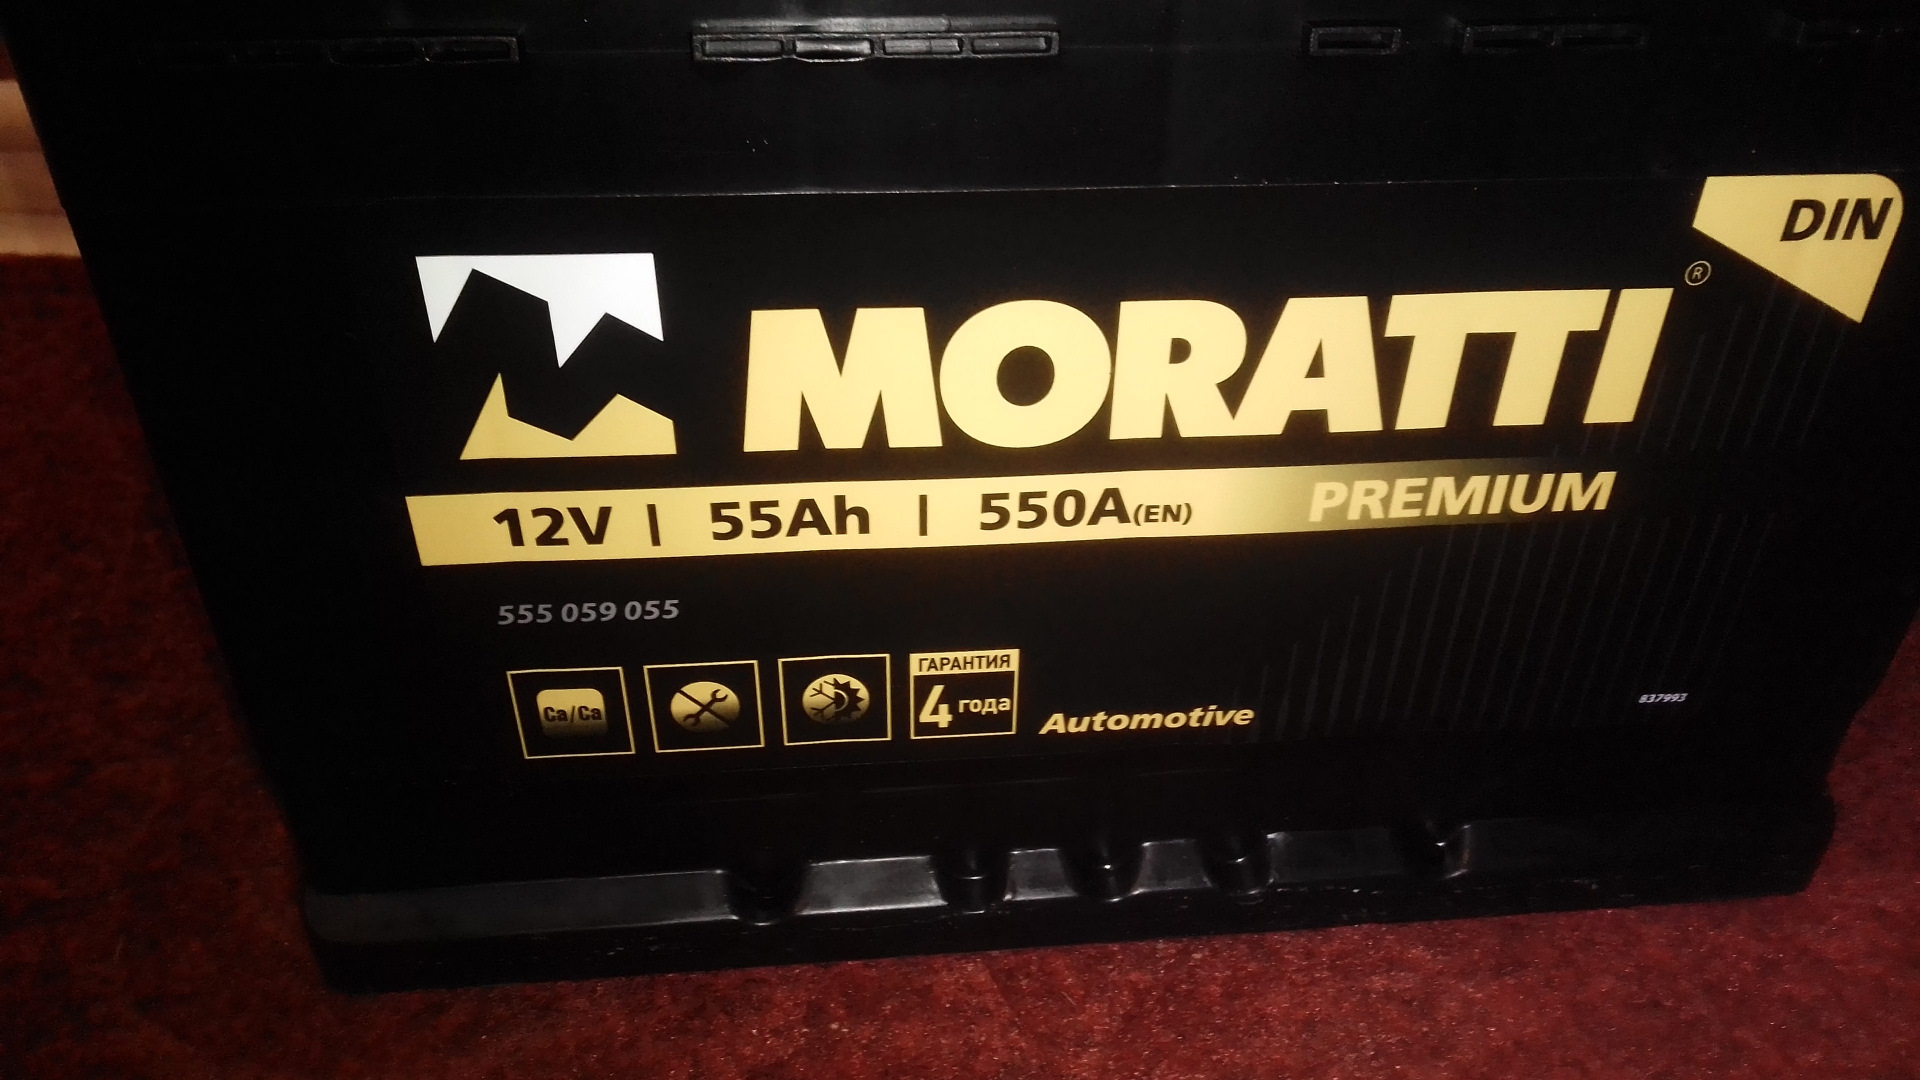 Nova battery. Аккумулятор Nova. Moratti 100 Ah 640 f 600033064. Moratti Marine 100 Ah 640 a. Moratti 575 014 075.